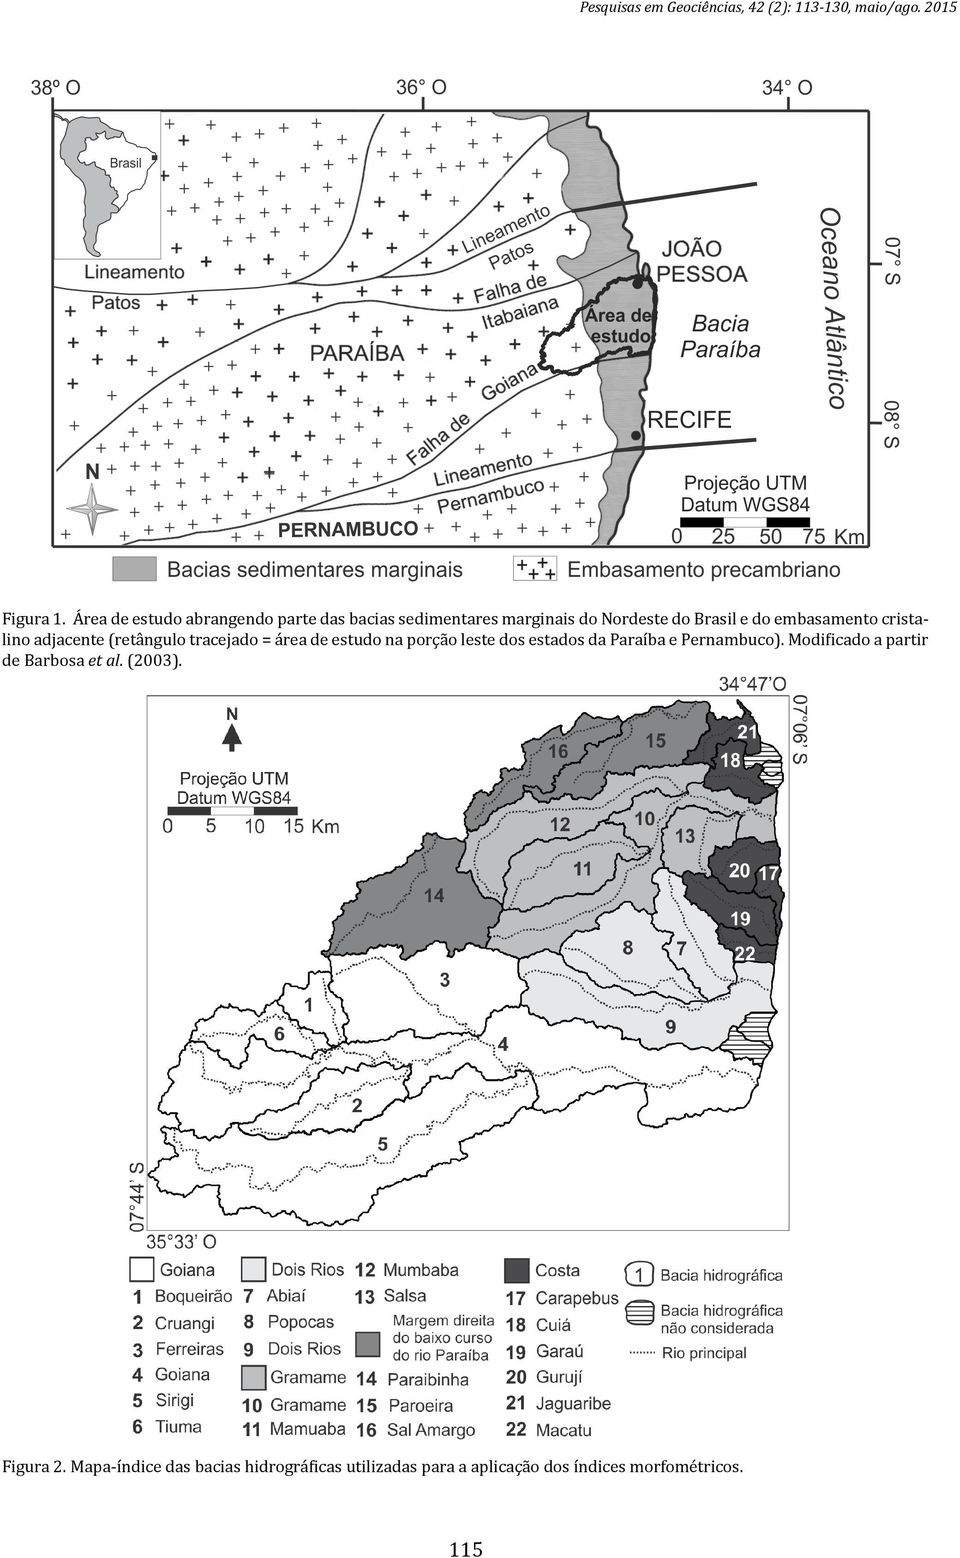 cristalino adjacente (retângulo tracejado = área de estudo na porção leste dos estados da Paraíba e